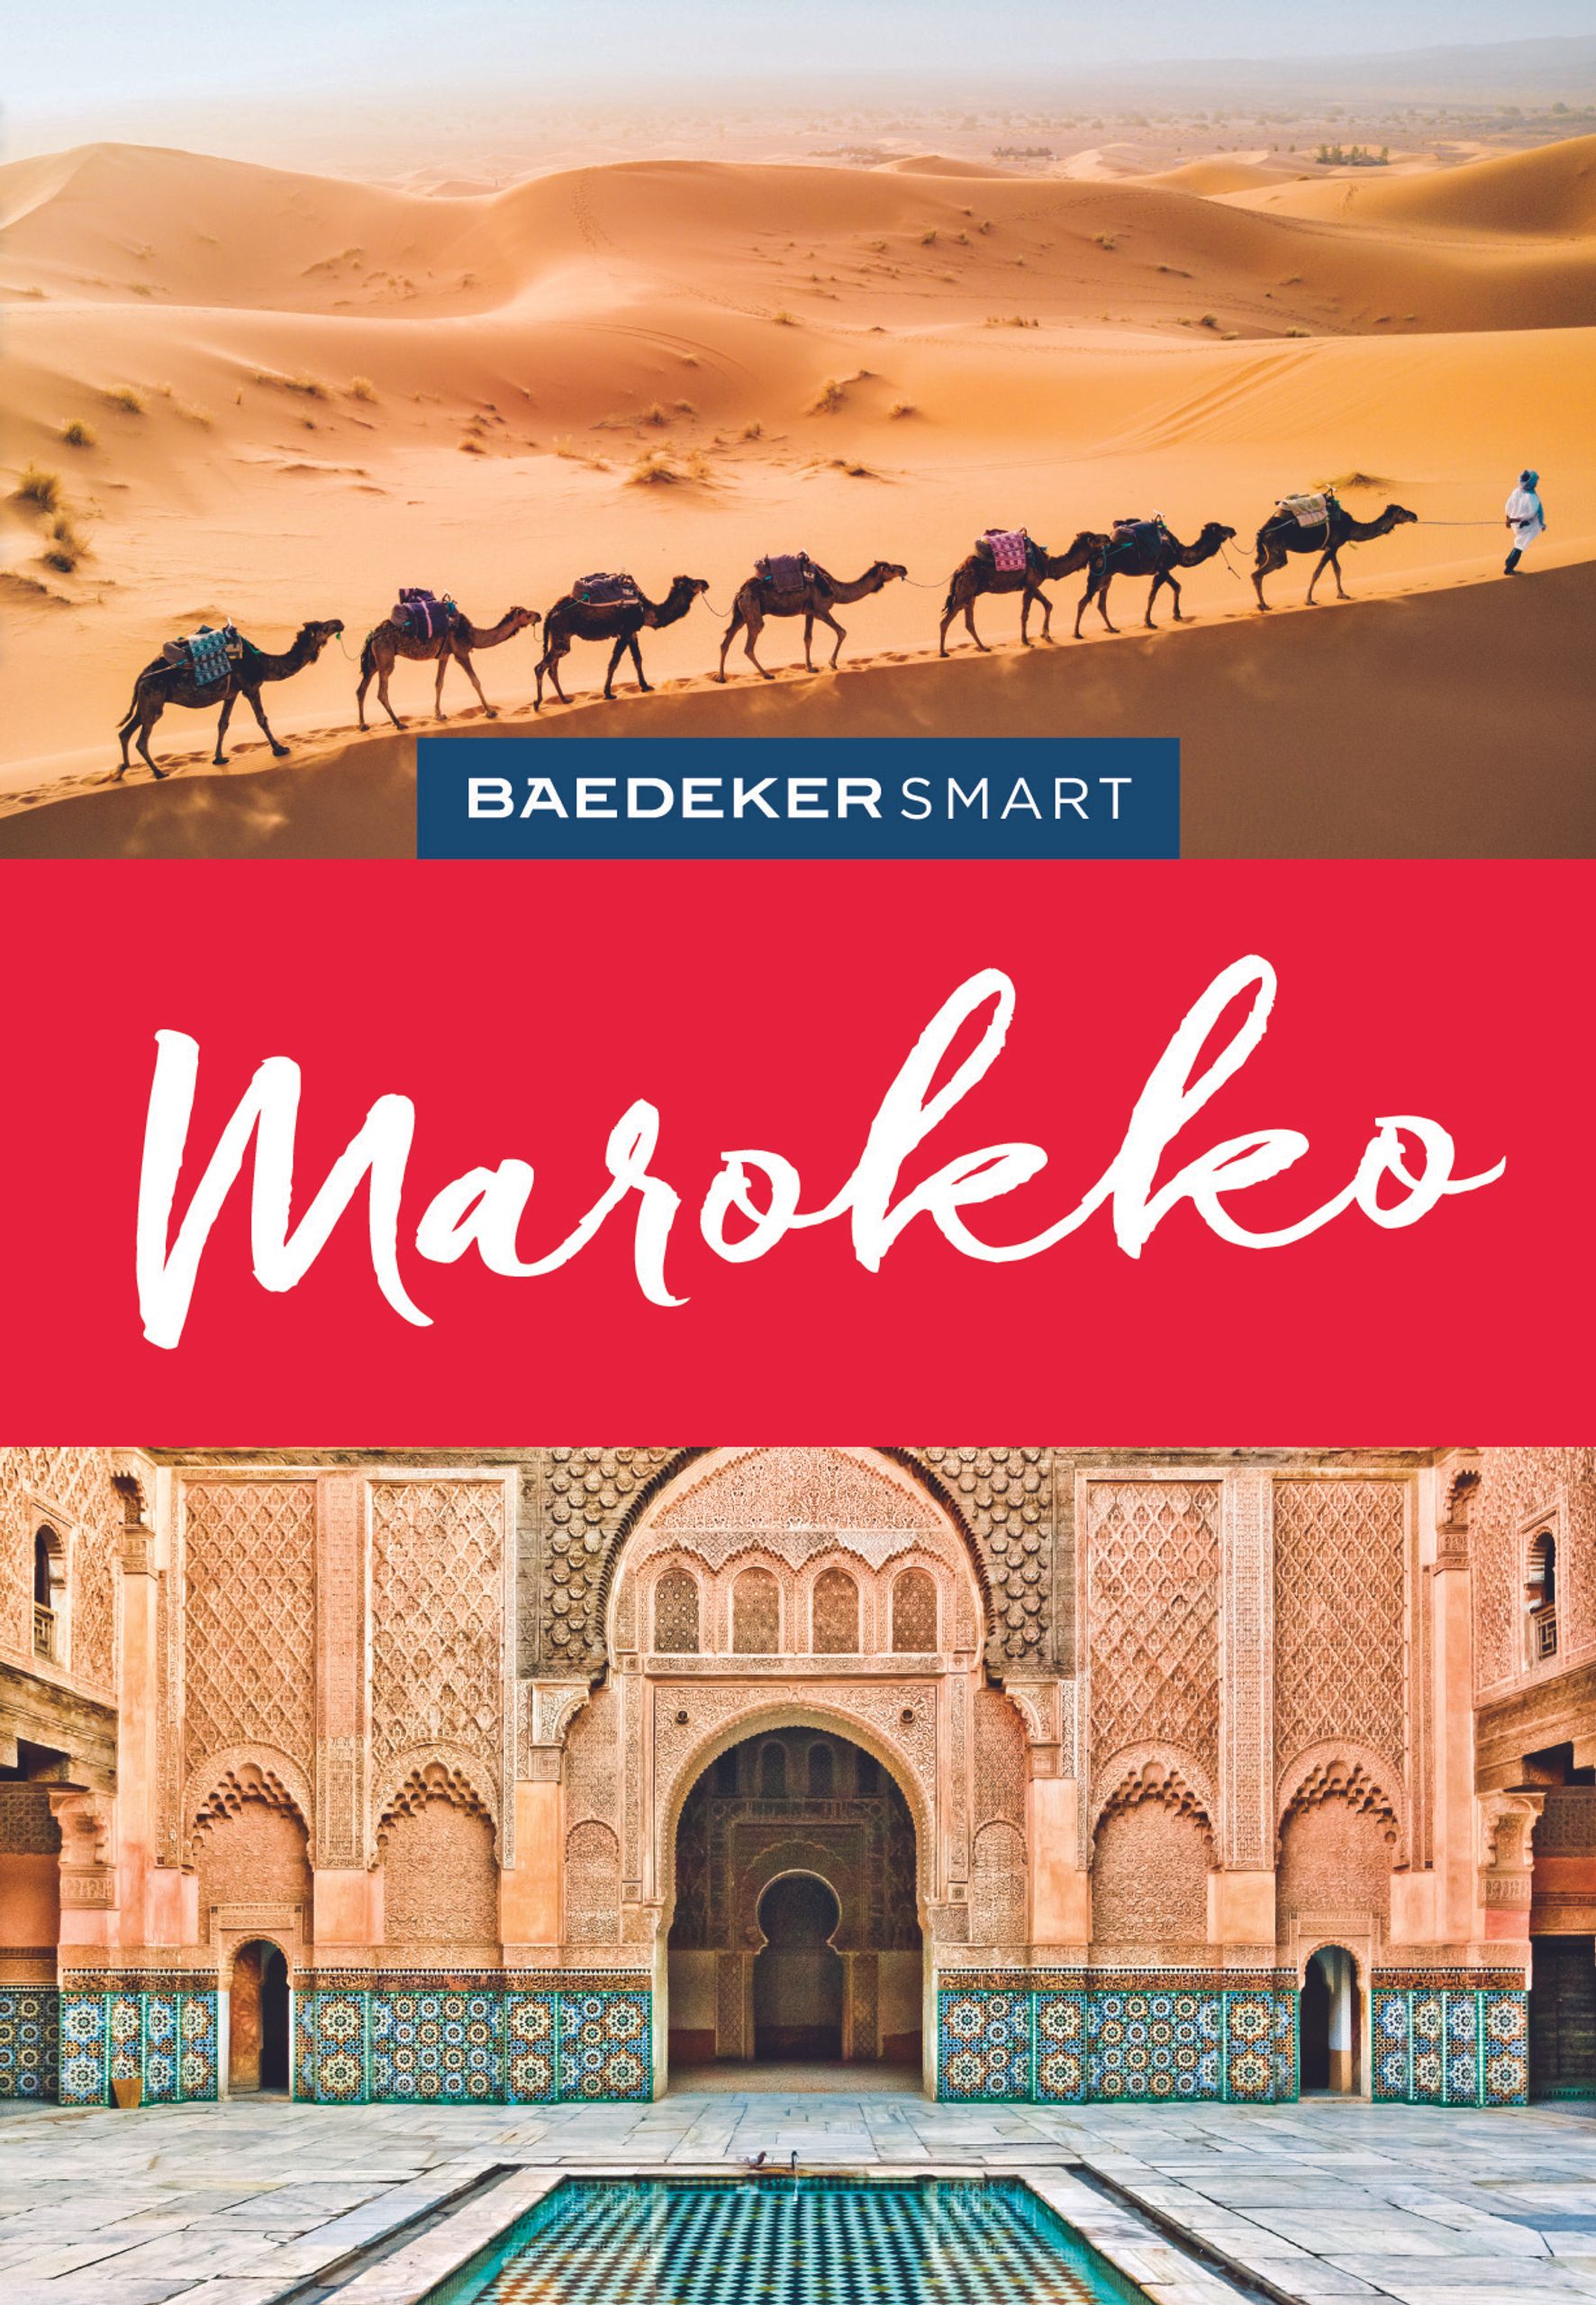 Baedeker Marokko (eBook)